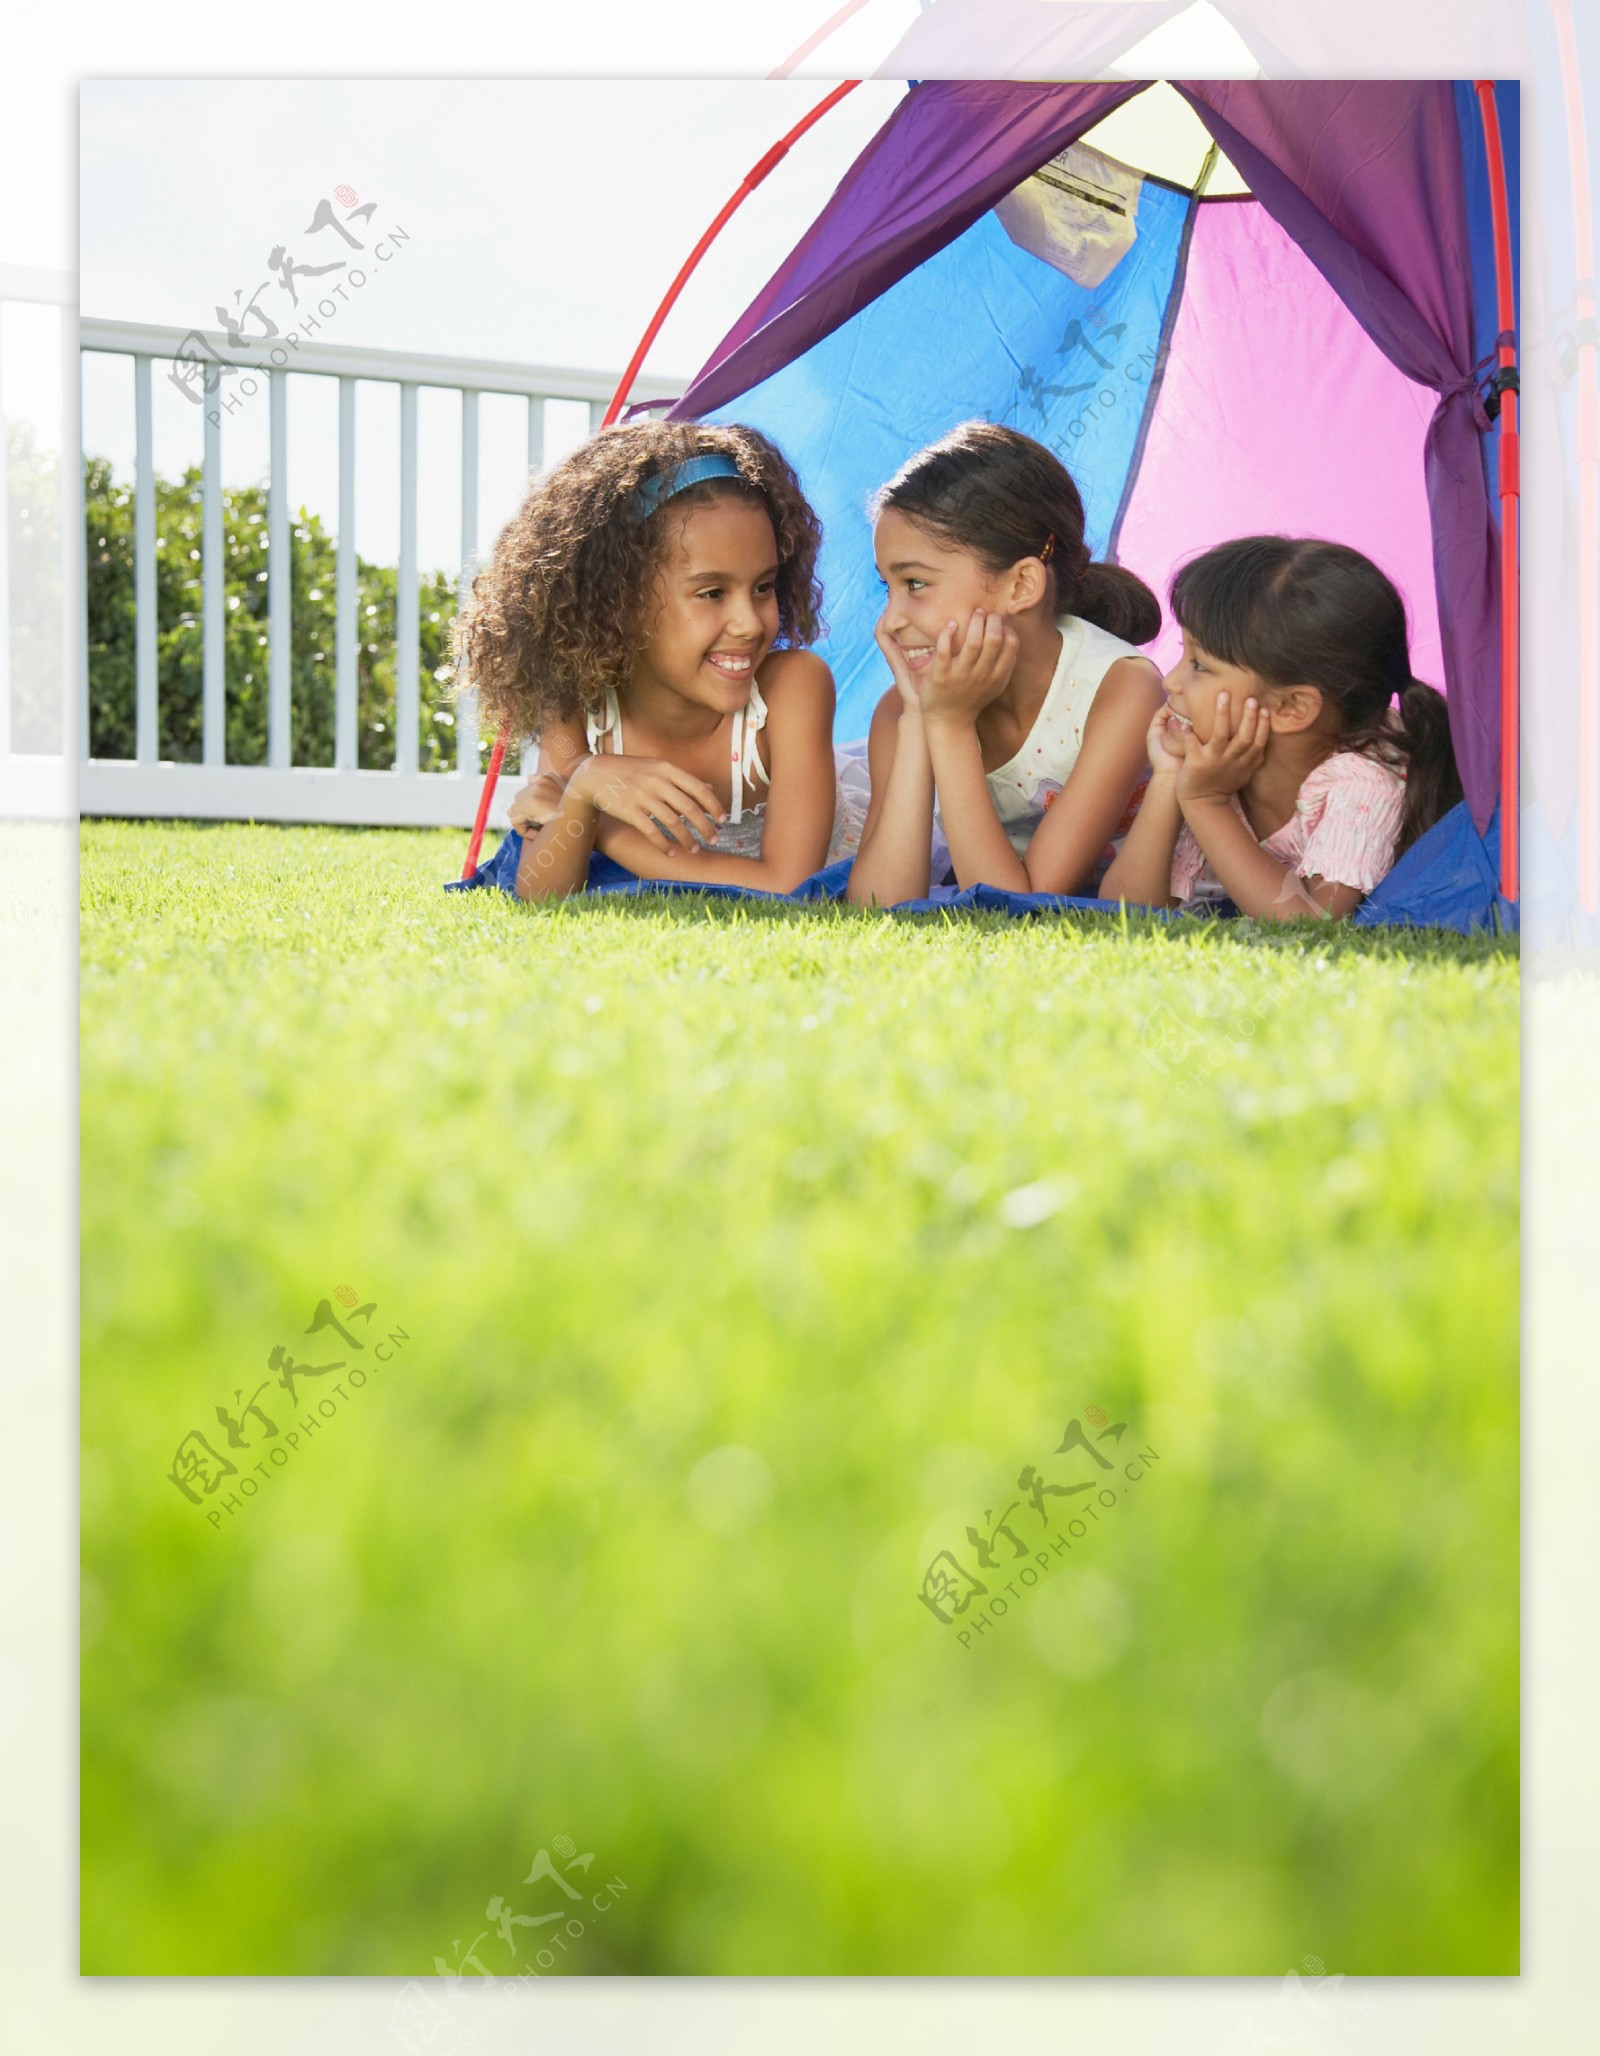 趴在帐篷里的三个小女孩图片